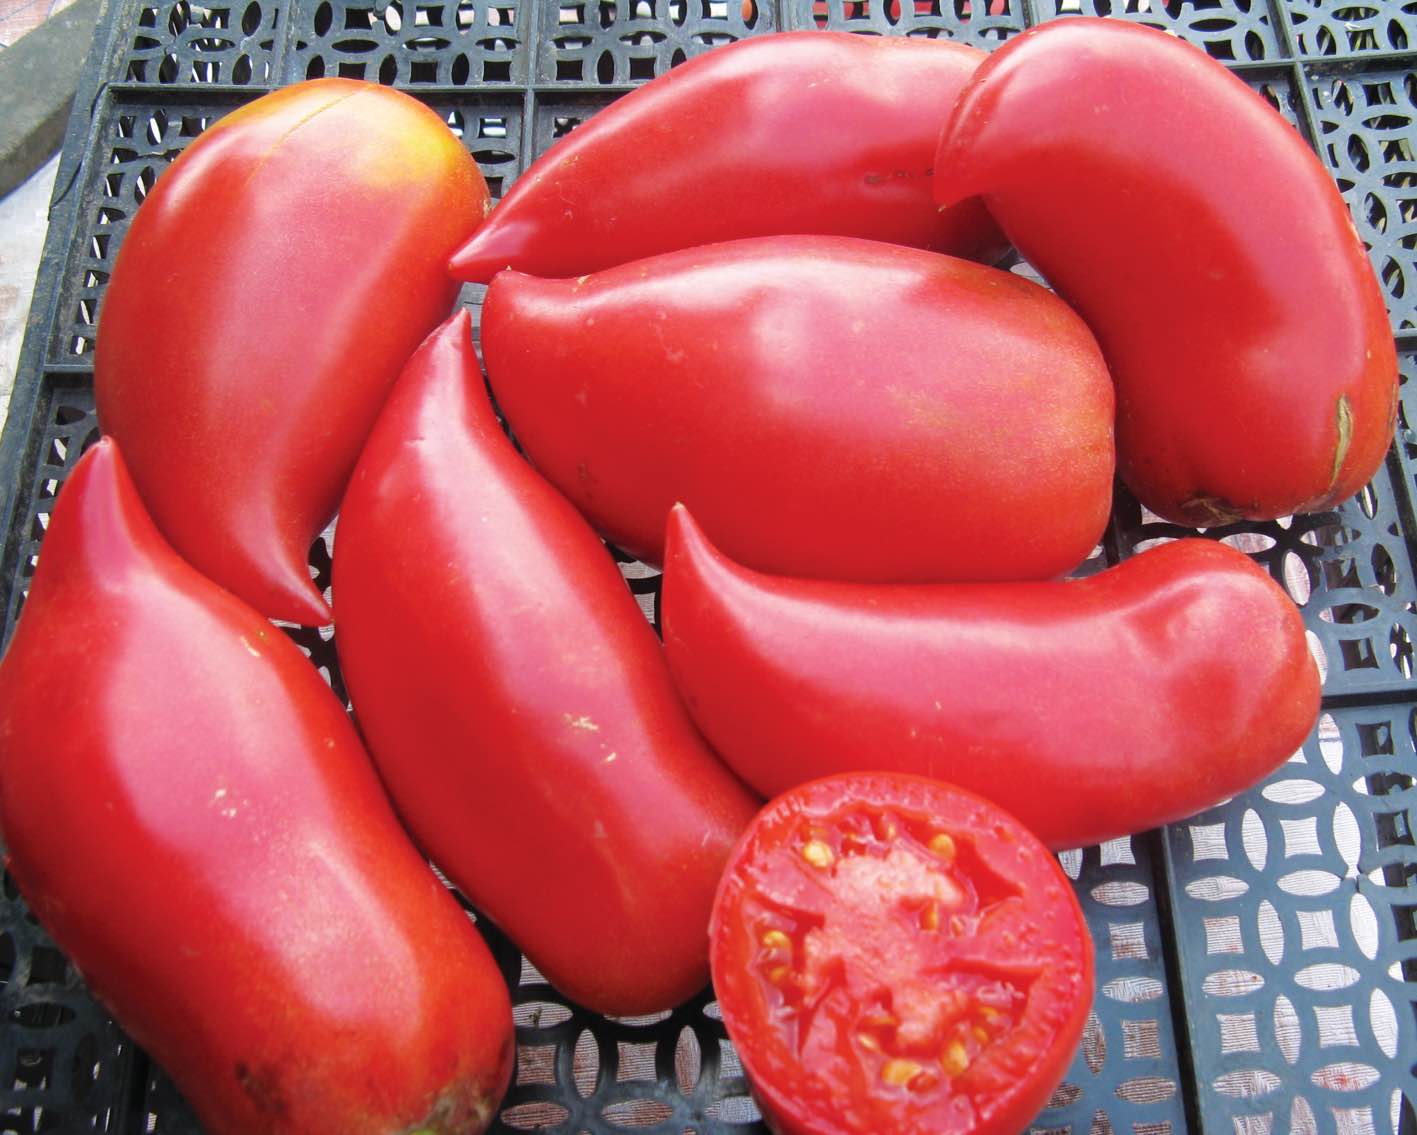 Красивый сорт — томат корейский длинноплодный: описание помидоров и характеристики